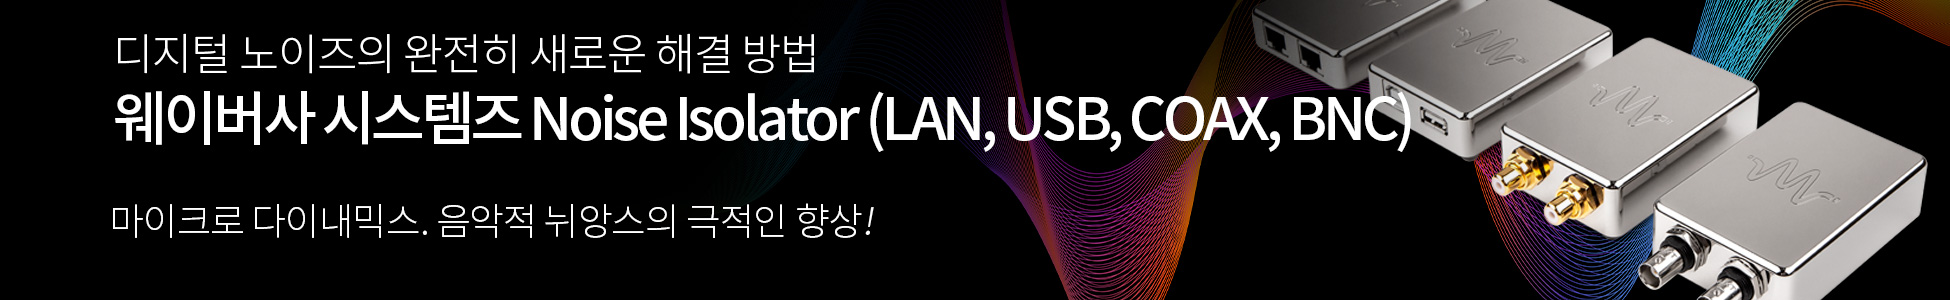 웨이버사 Noise Isolator (LAN, USB, COAX, BNC)